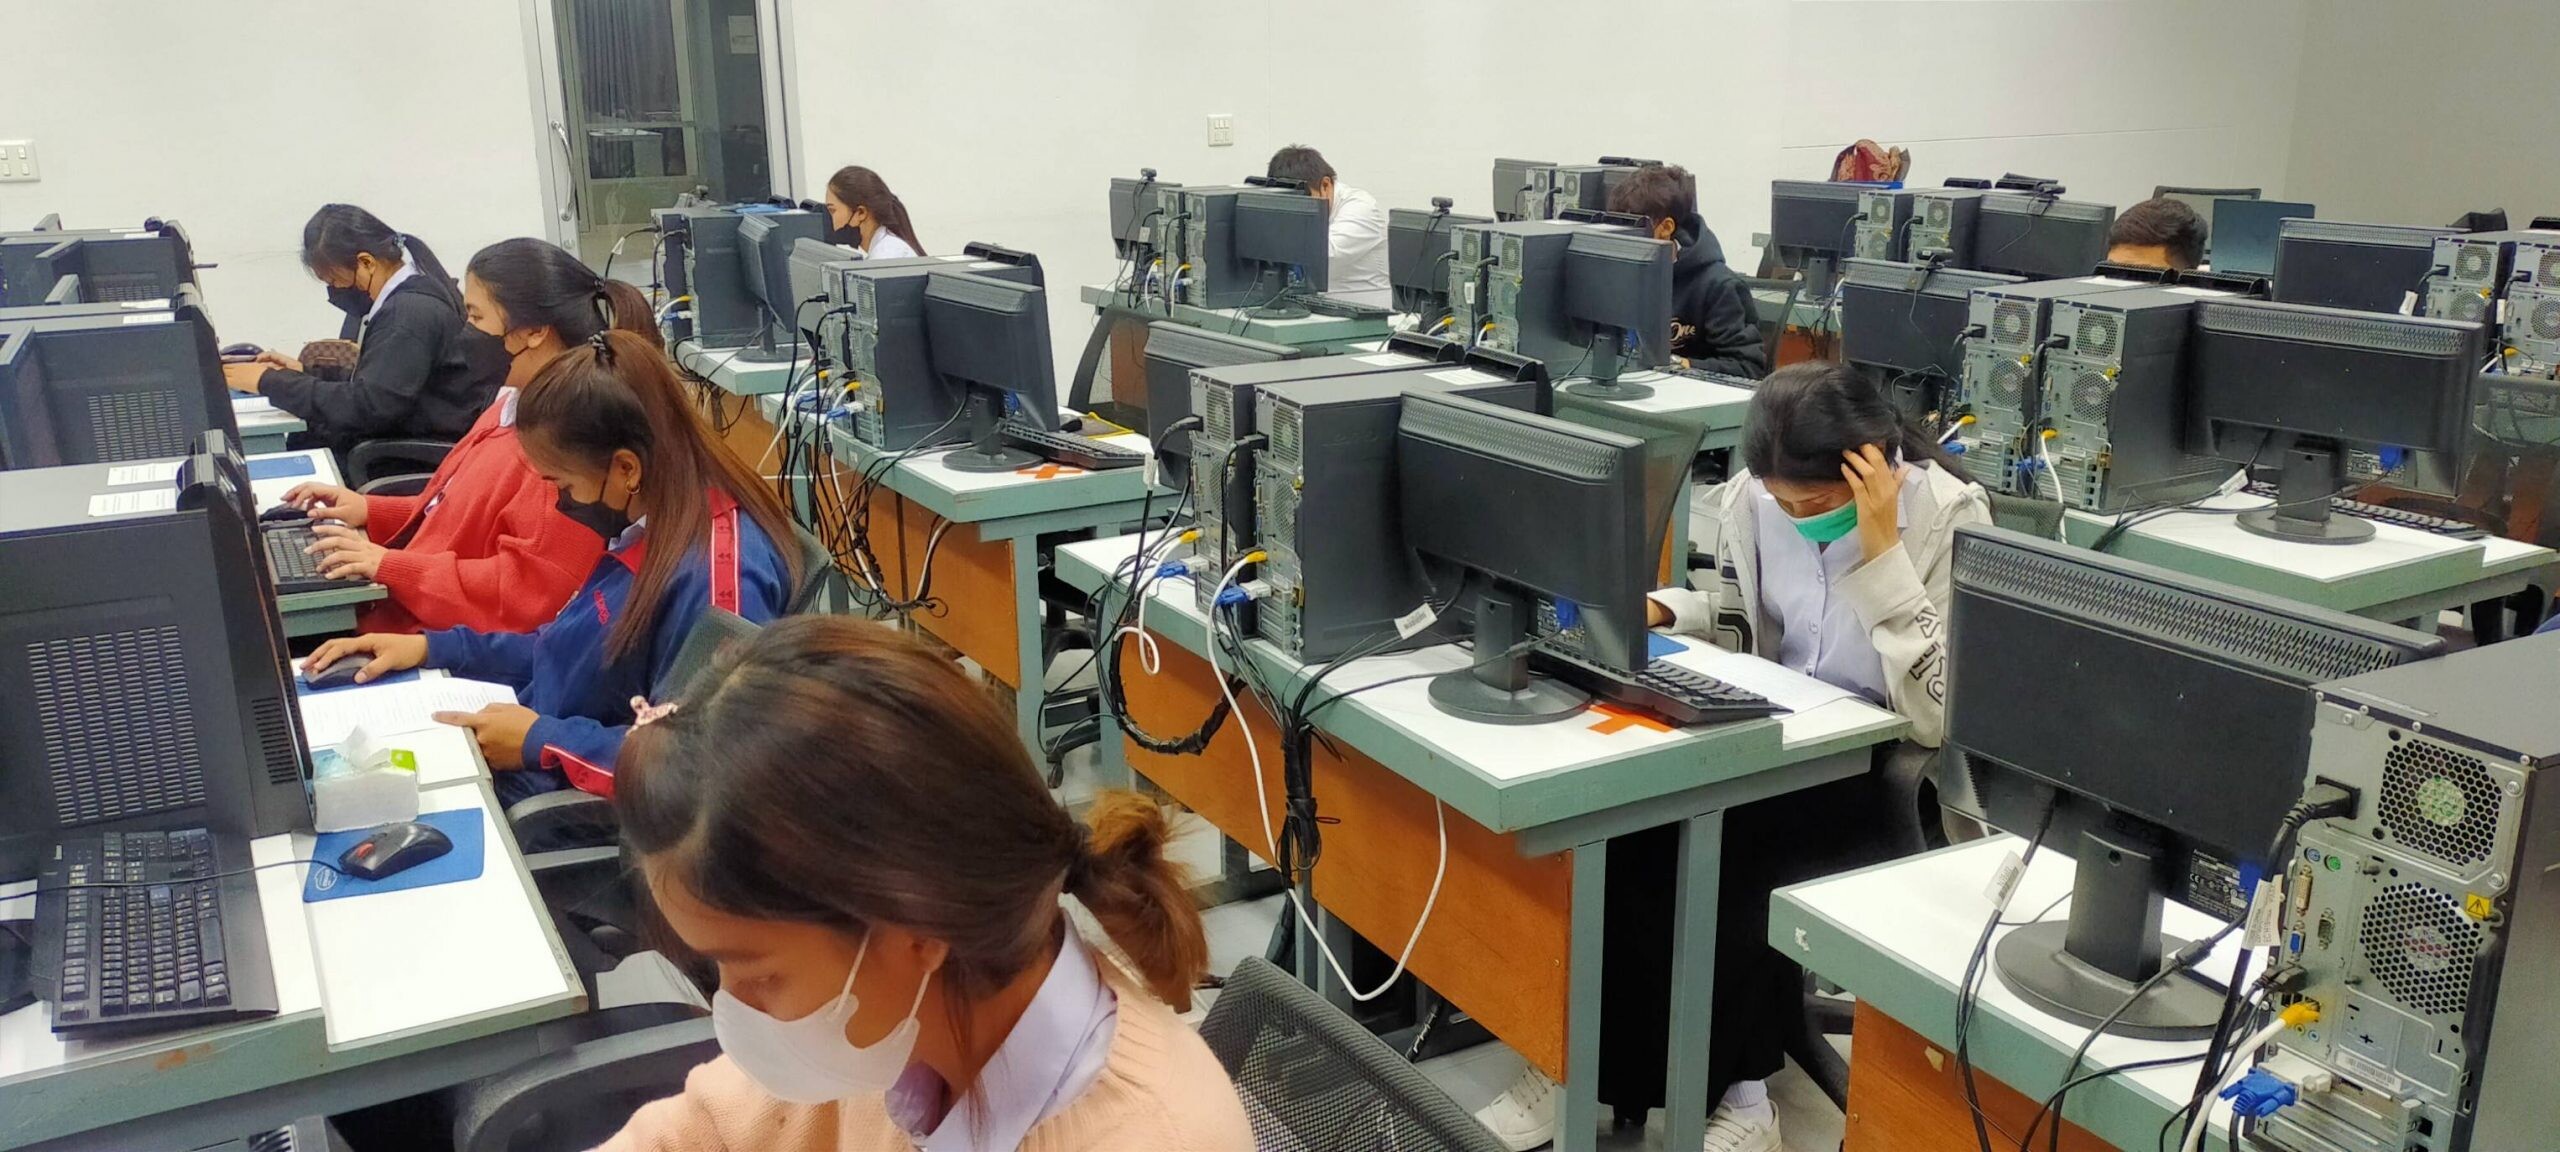 สำนักงานพัฒนาฝีมือแรงงานเพชรบุรี ดำเนินการทดสอบมาตรฐานฝีมือแรงงานแห่งชาติ สาขา พนักงานการใช้คอมพิวเตอร์ (ตารางทำการ) ระดับ 1 ในวันที่ 10 สิงหาคม 2565